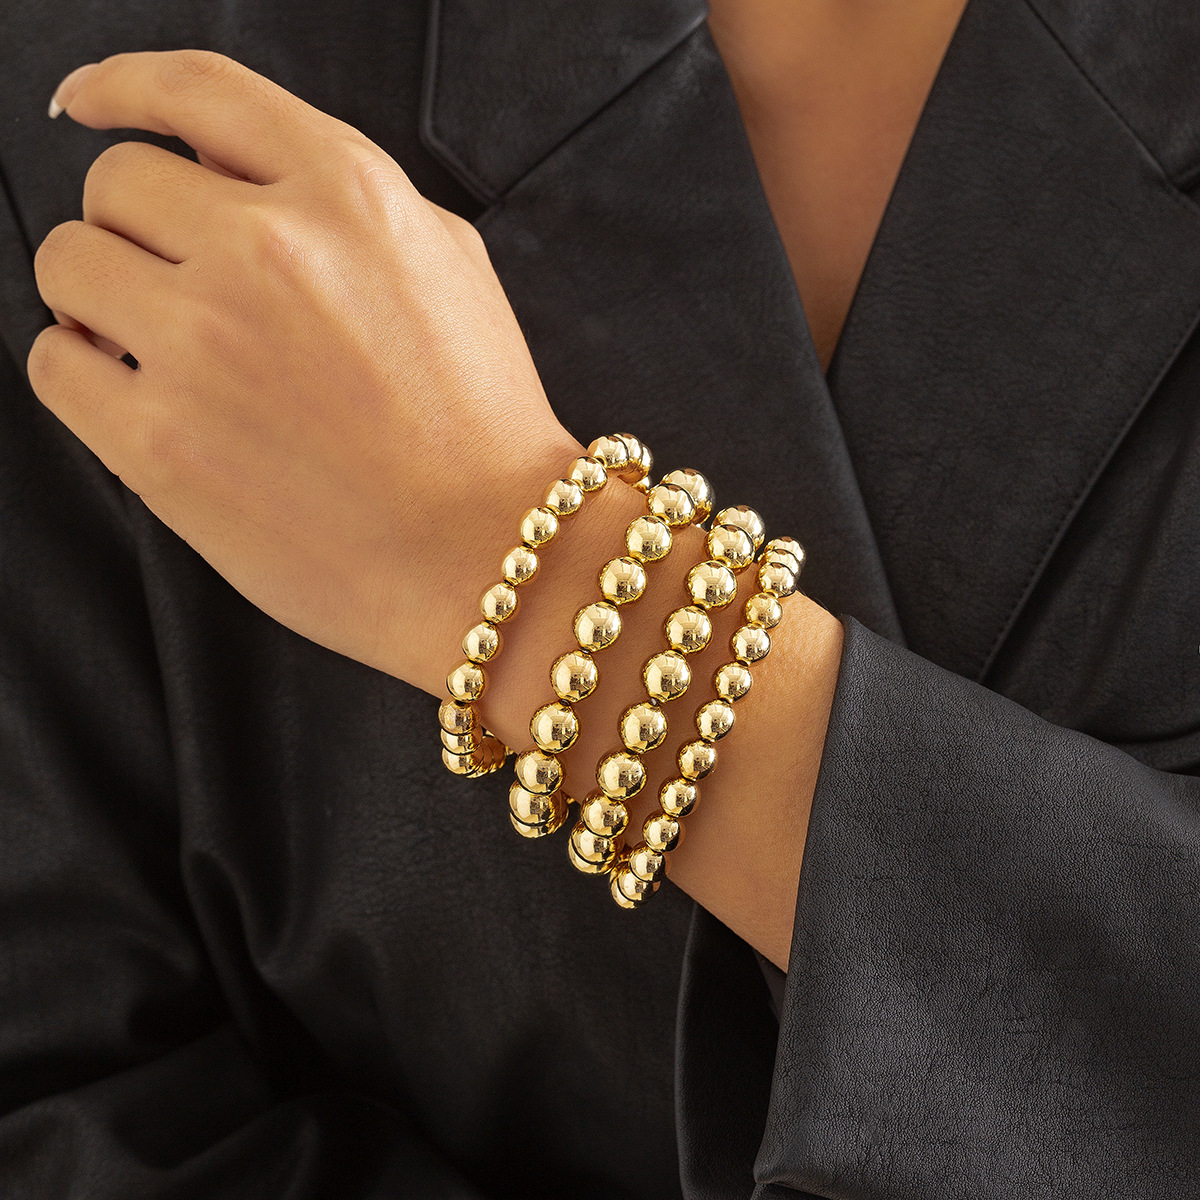 5:Golden bracelet 0989